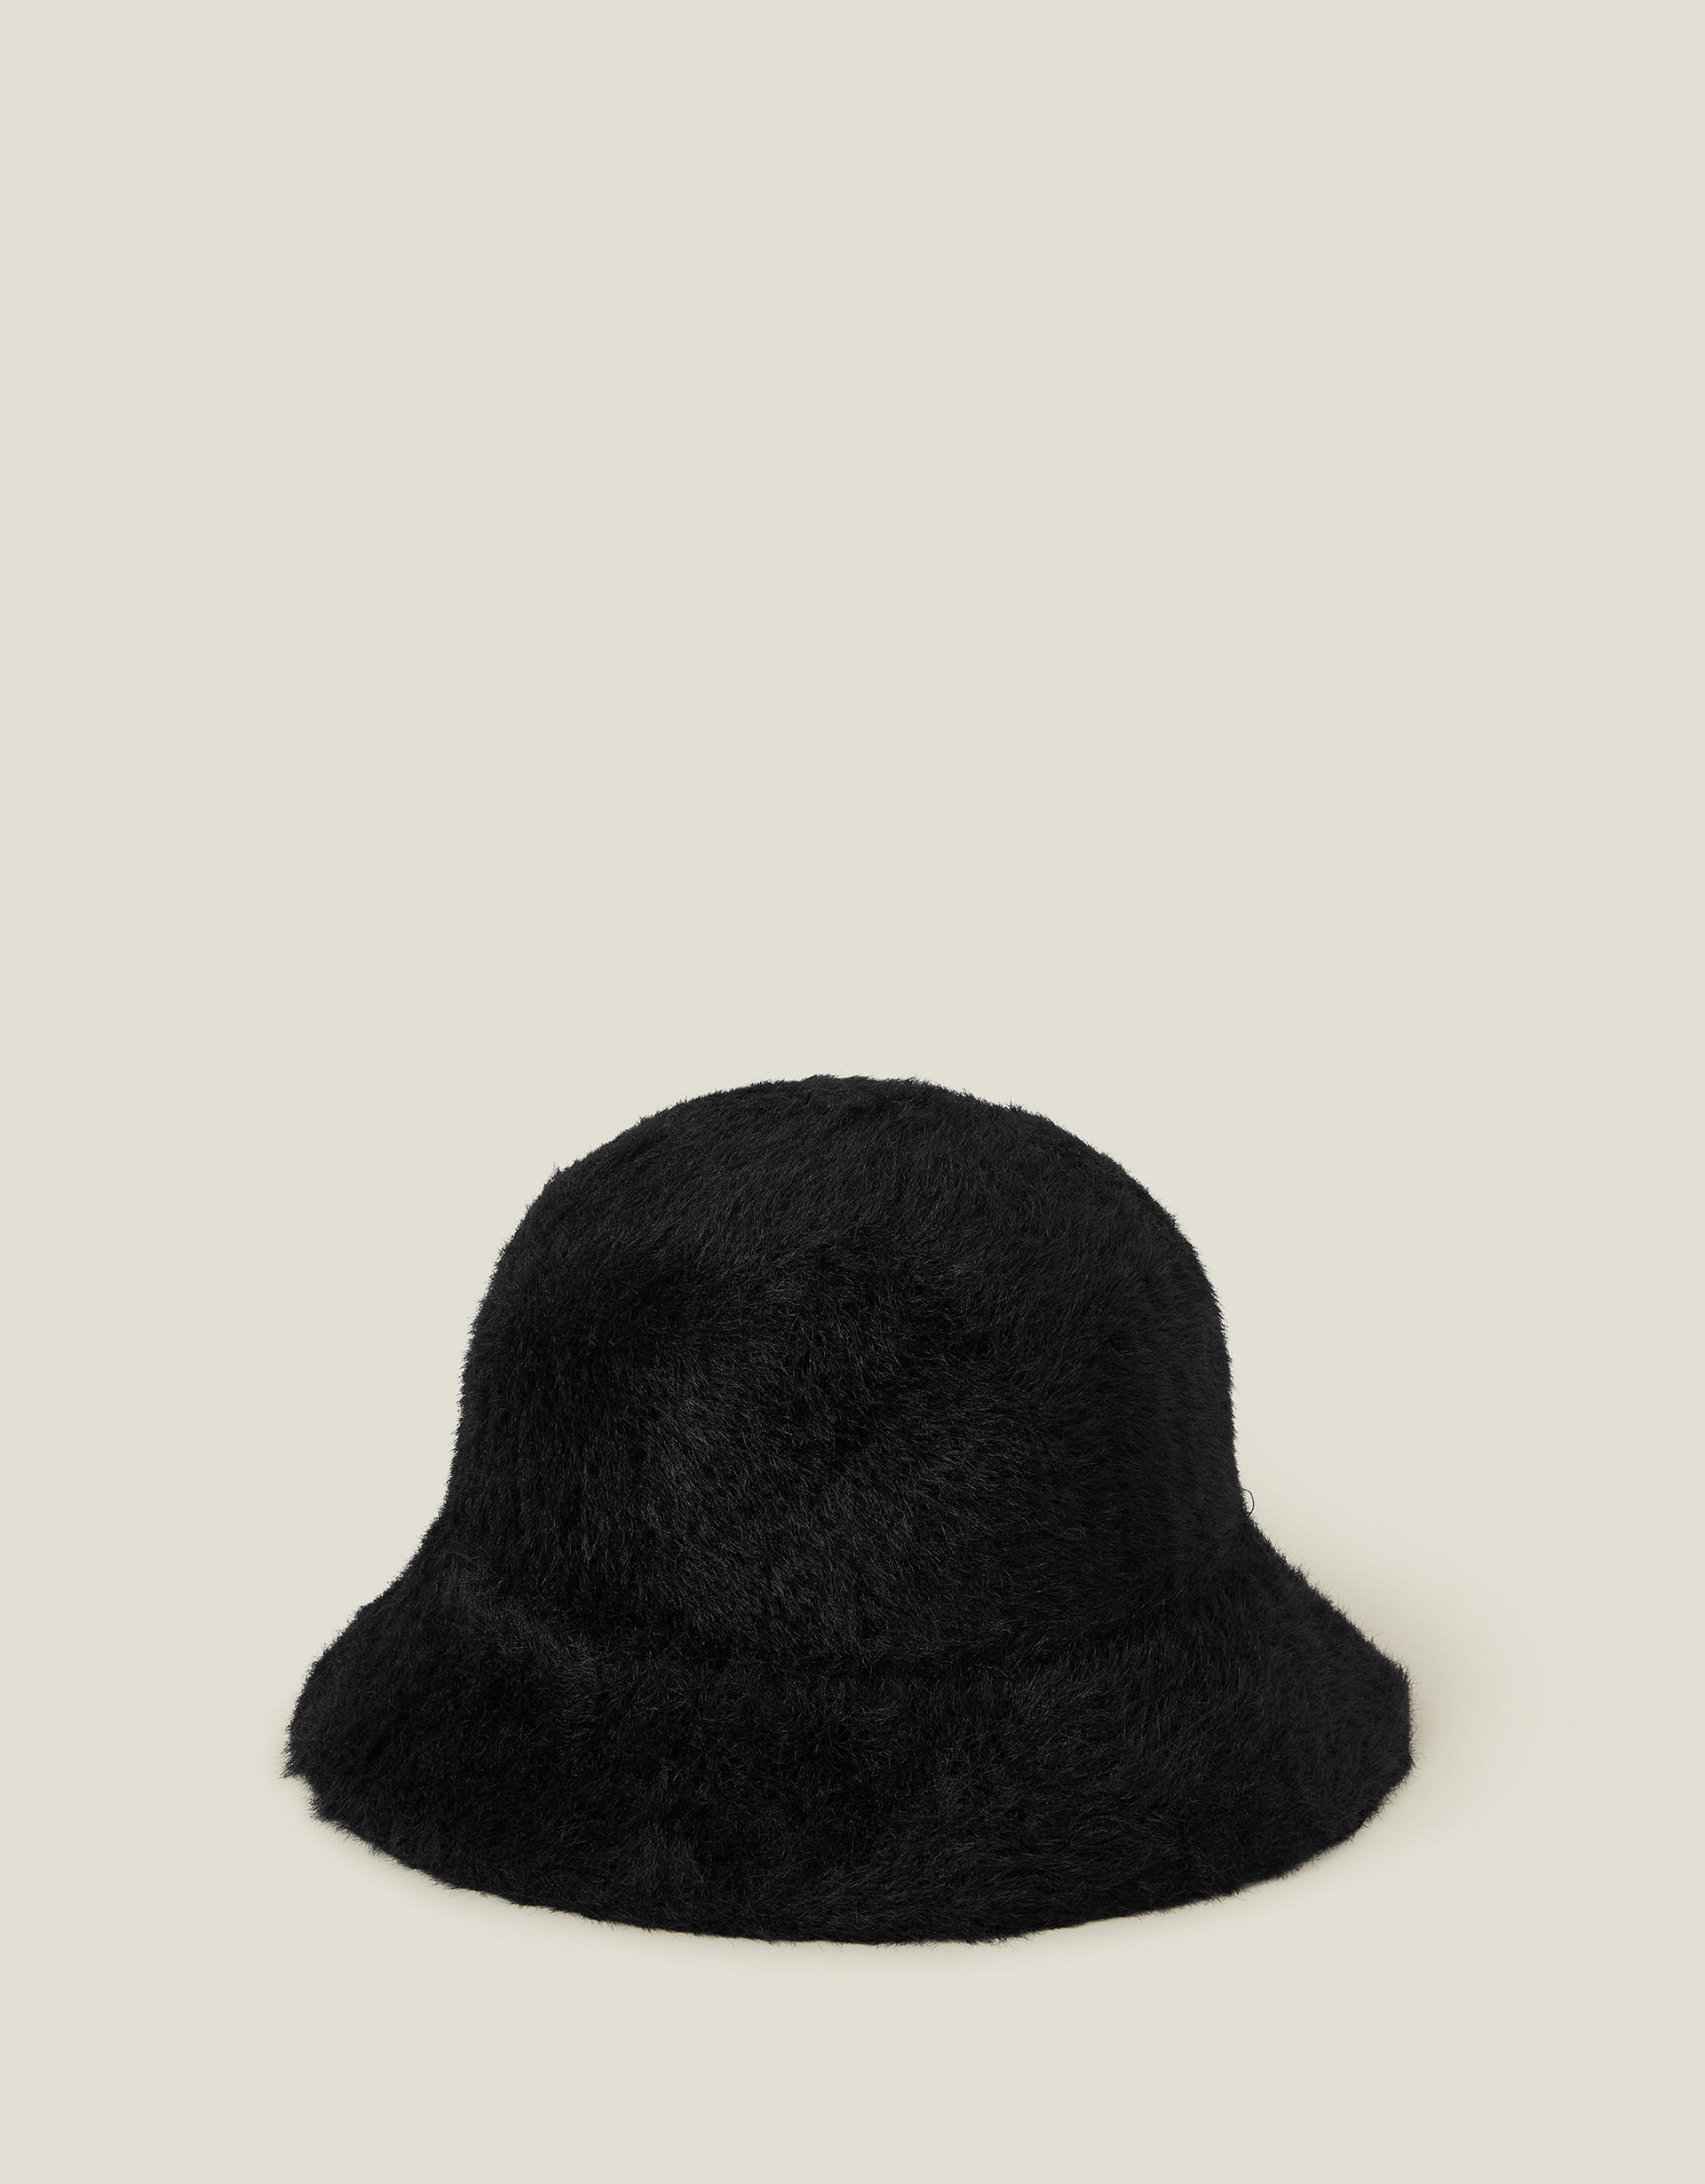 Accessorize Women's Fluffy Bucket Hat Black, Size: 57cm